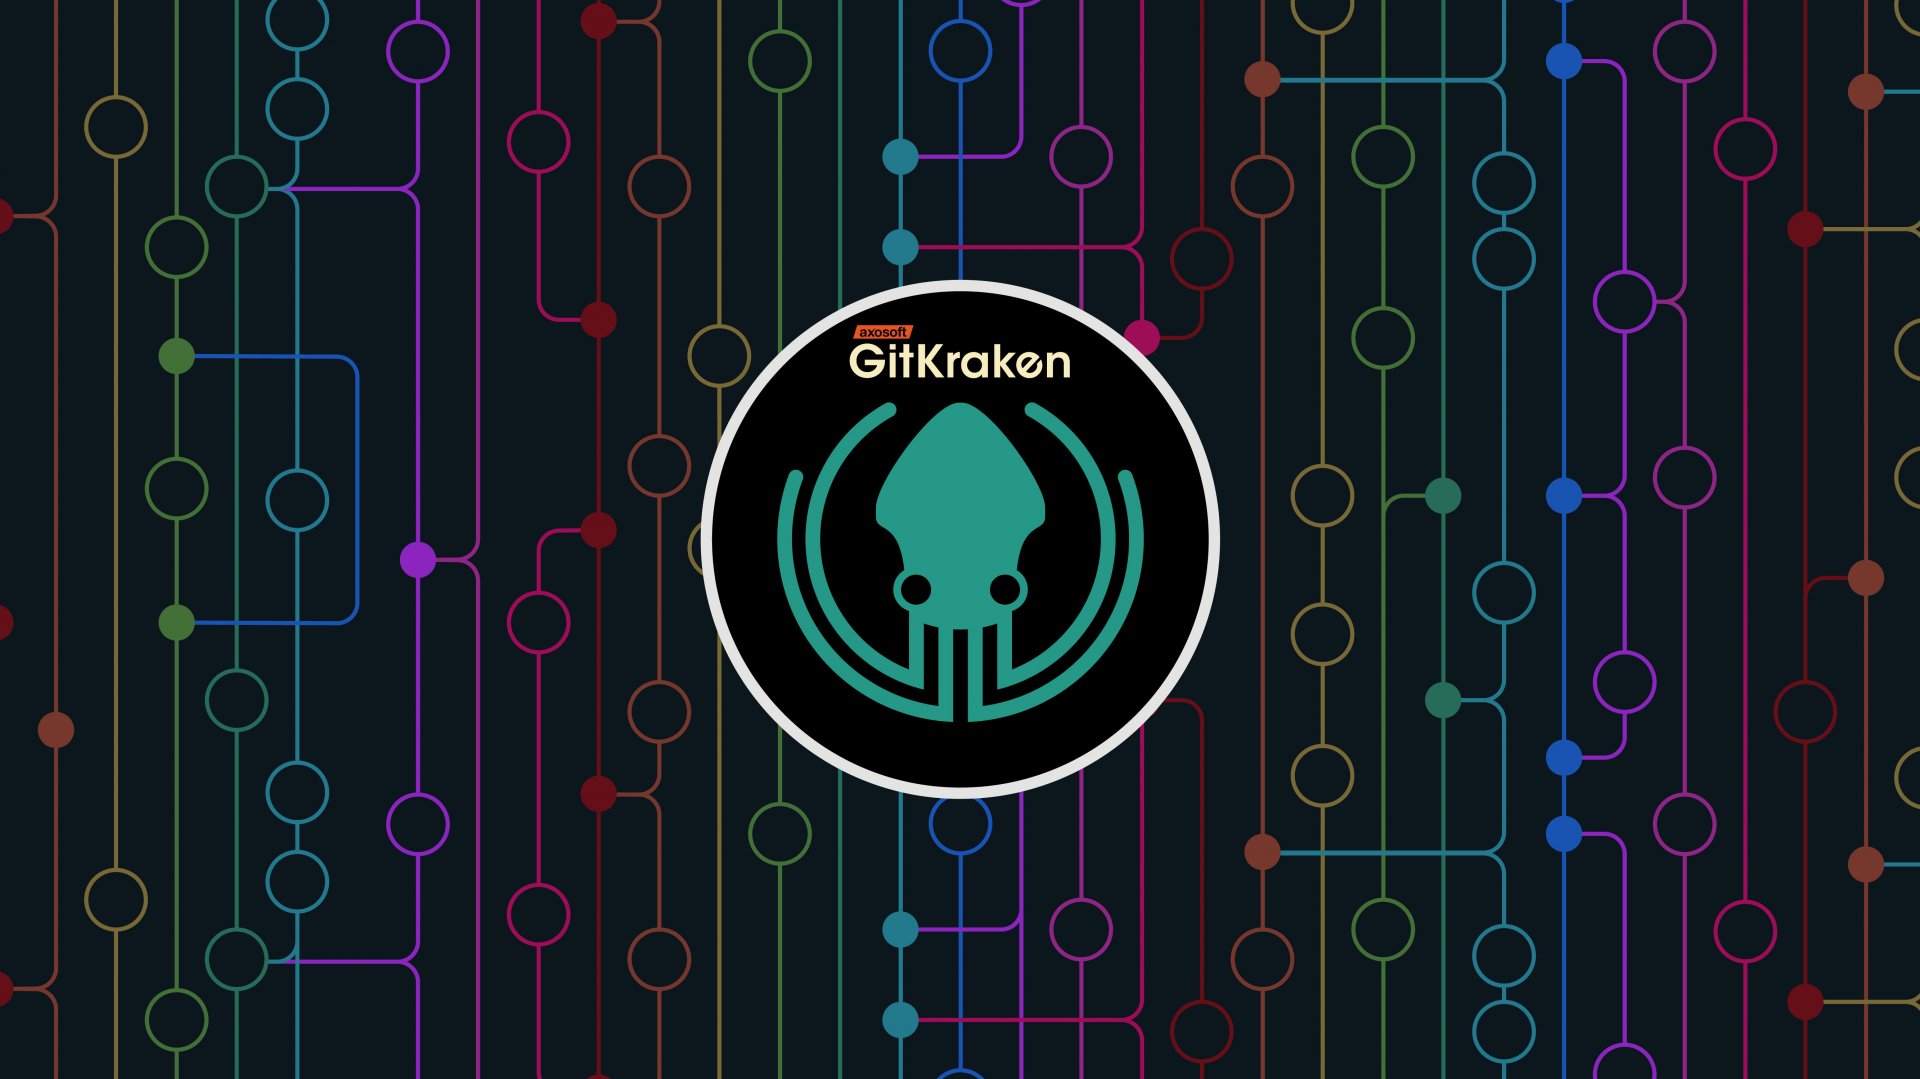 logo GitKraken - Git